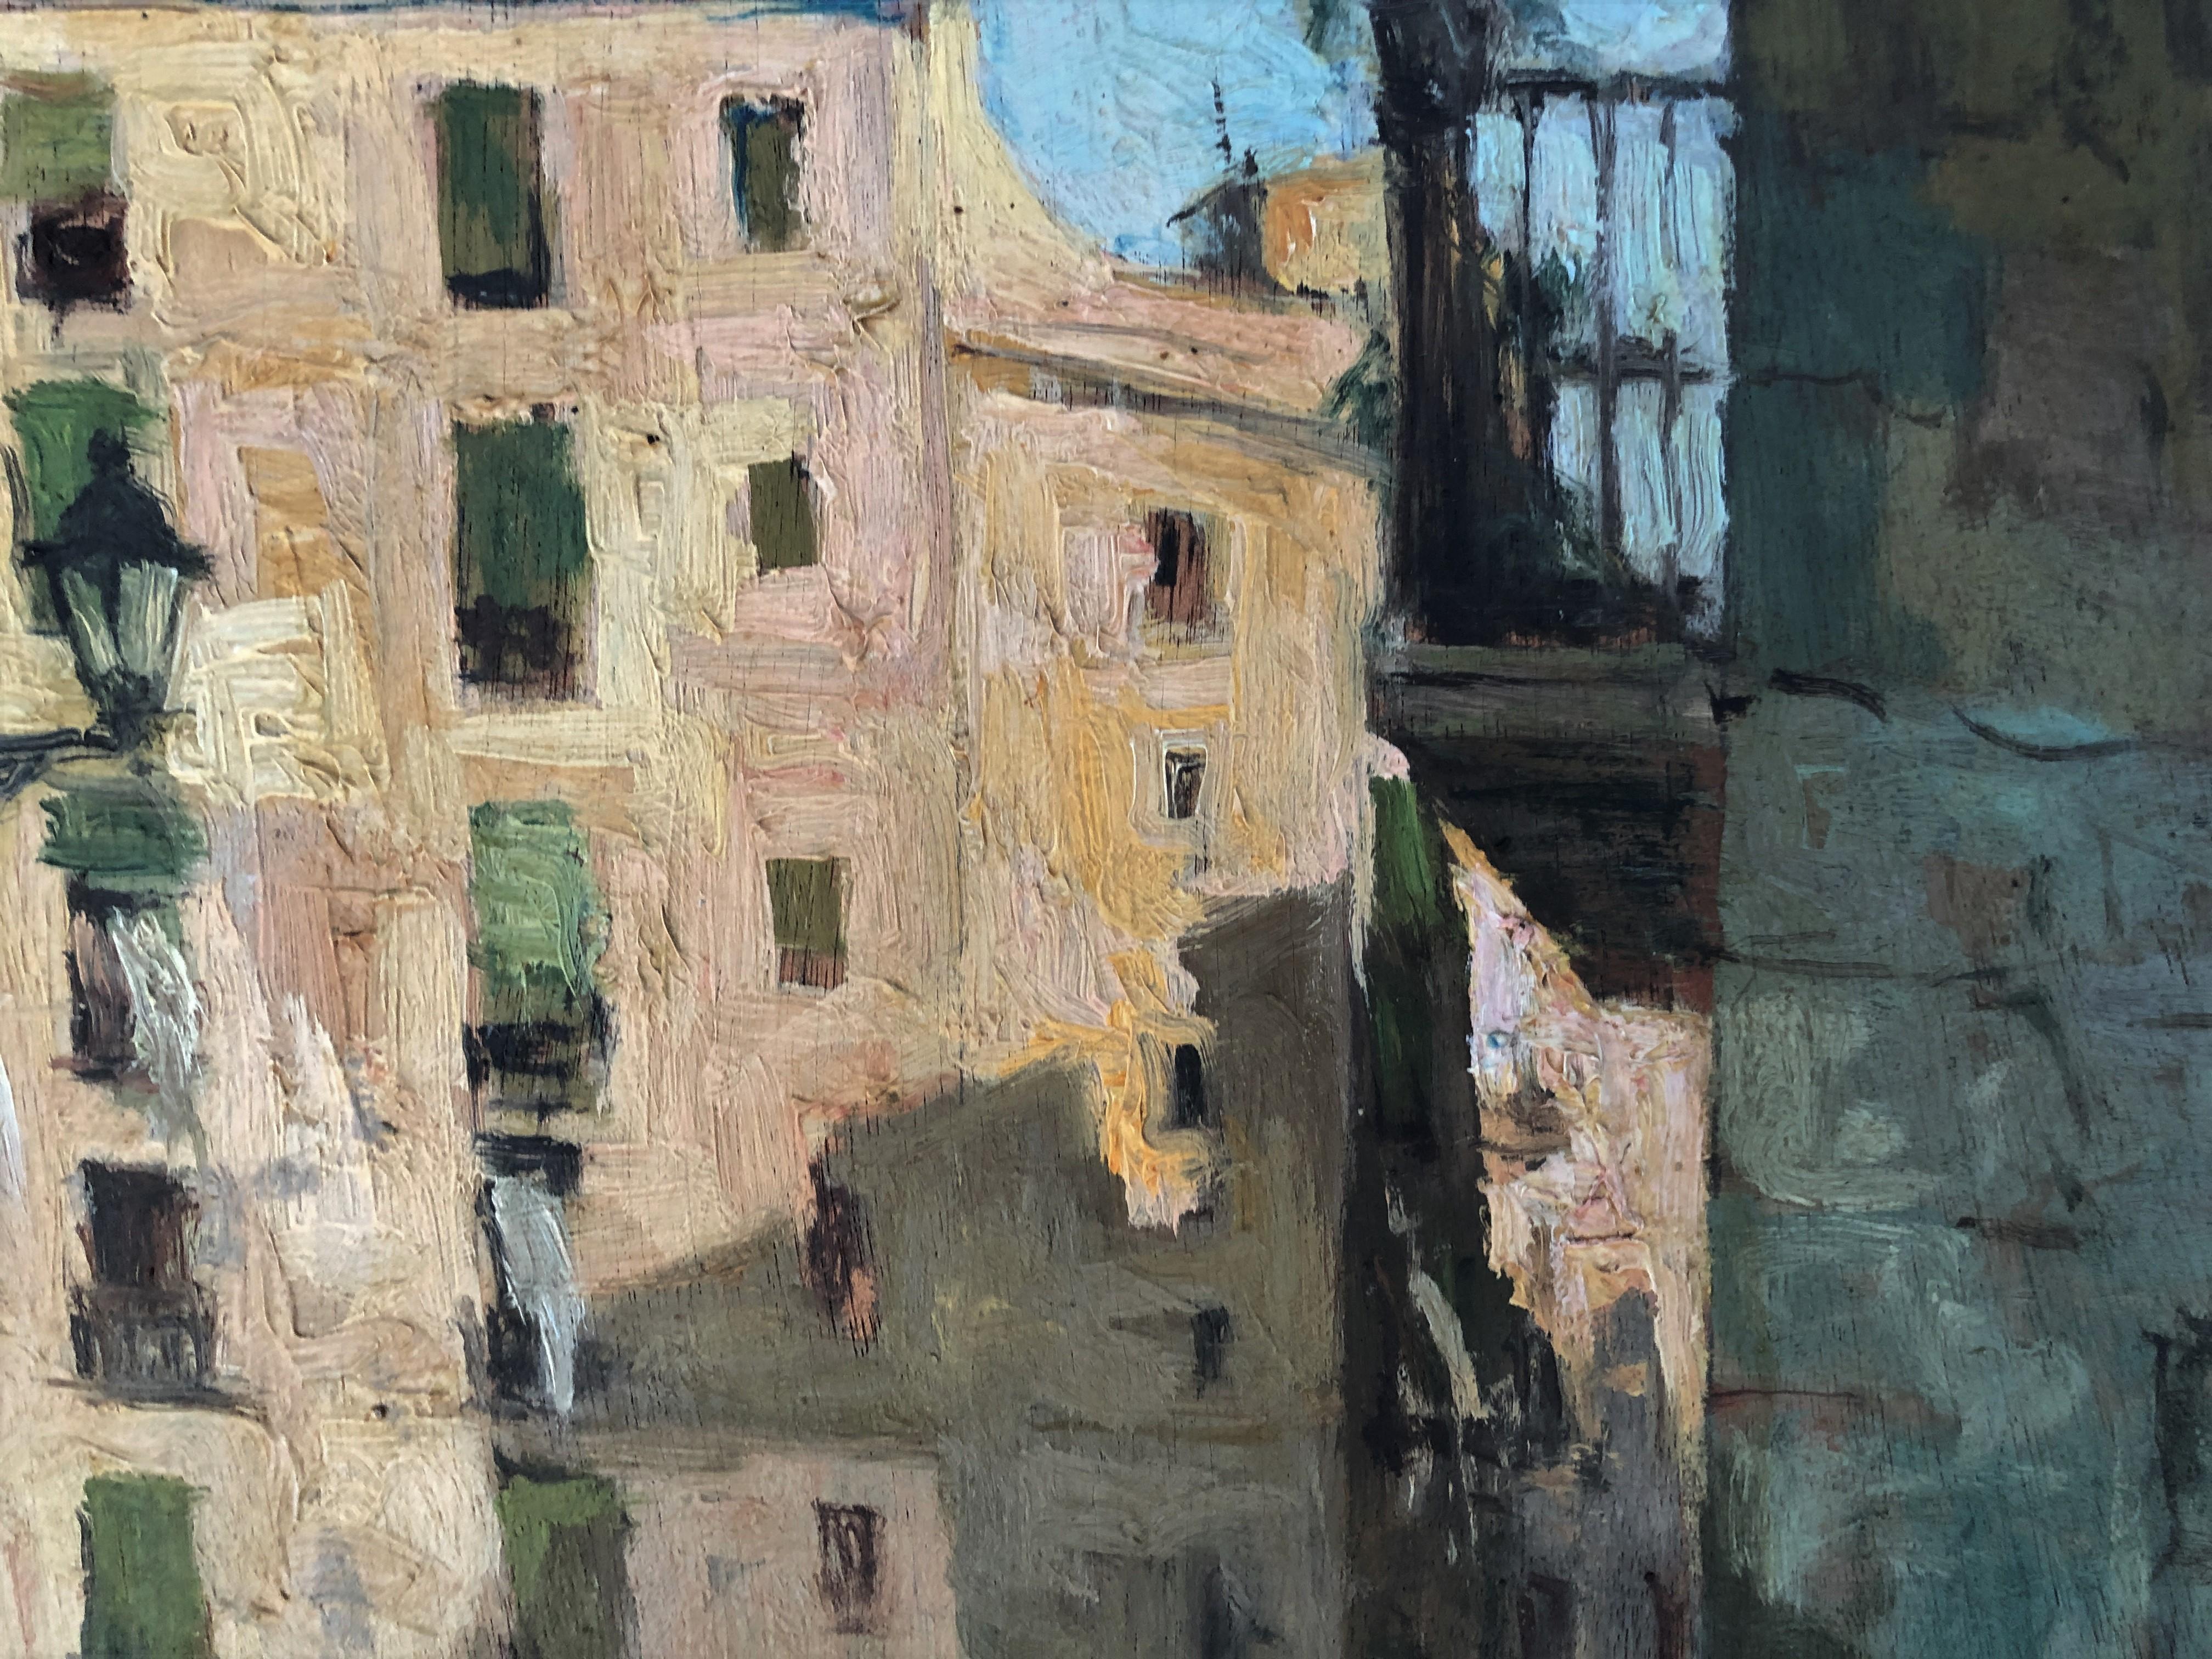 Taille du cadre 55x62 cm.

Asensio Mariné (Barcelone, 1890-1961) était un peintre spécialisé dans les paysages, les figures et les natures mortes d'un réalisme marqué, qui a réalisé une poignée d'expositions personnelles et collectives dans